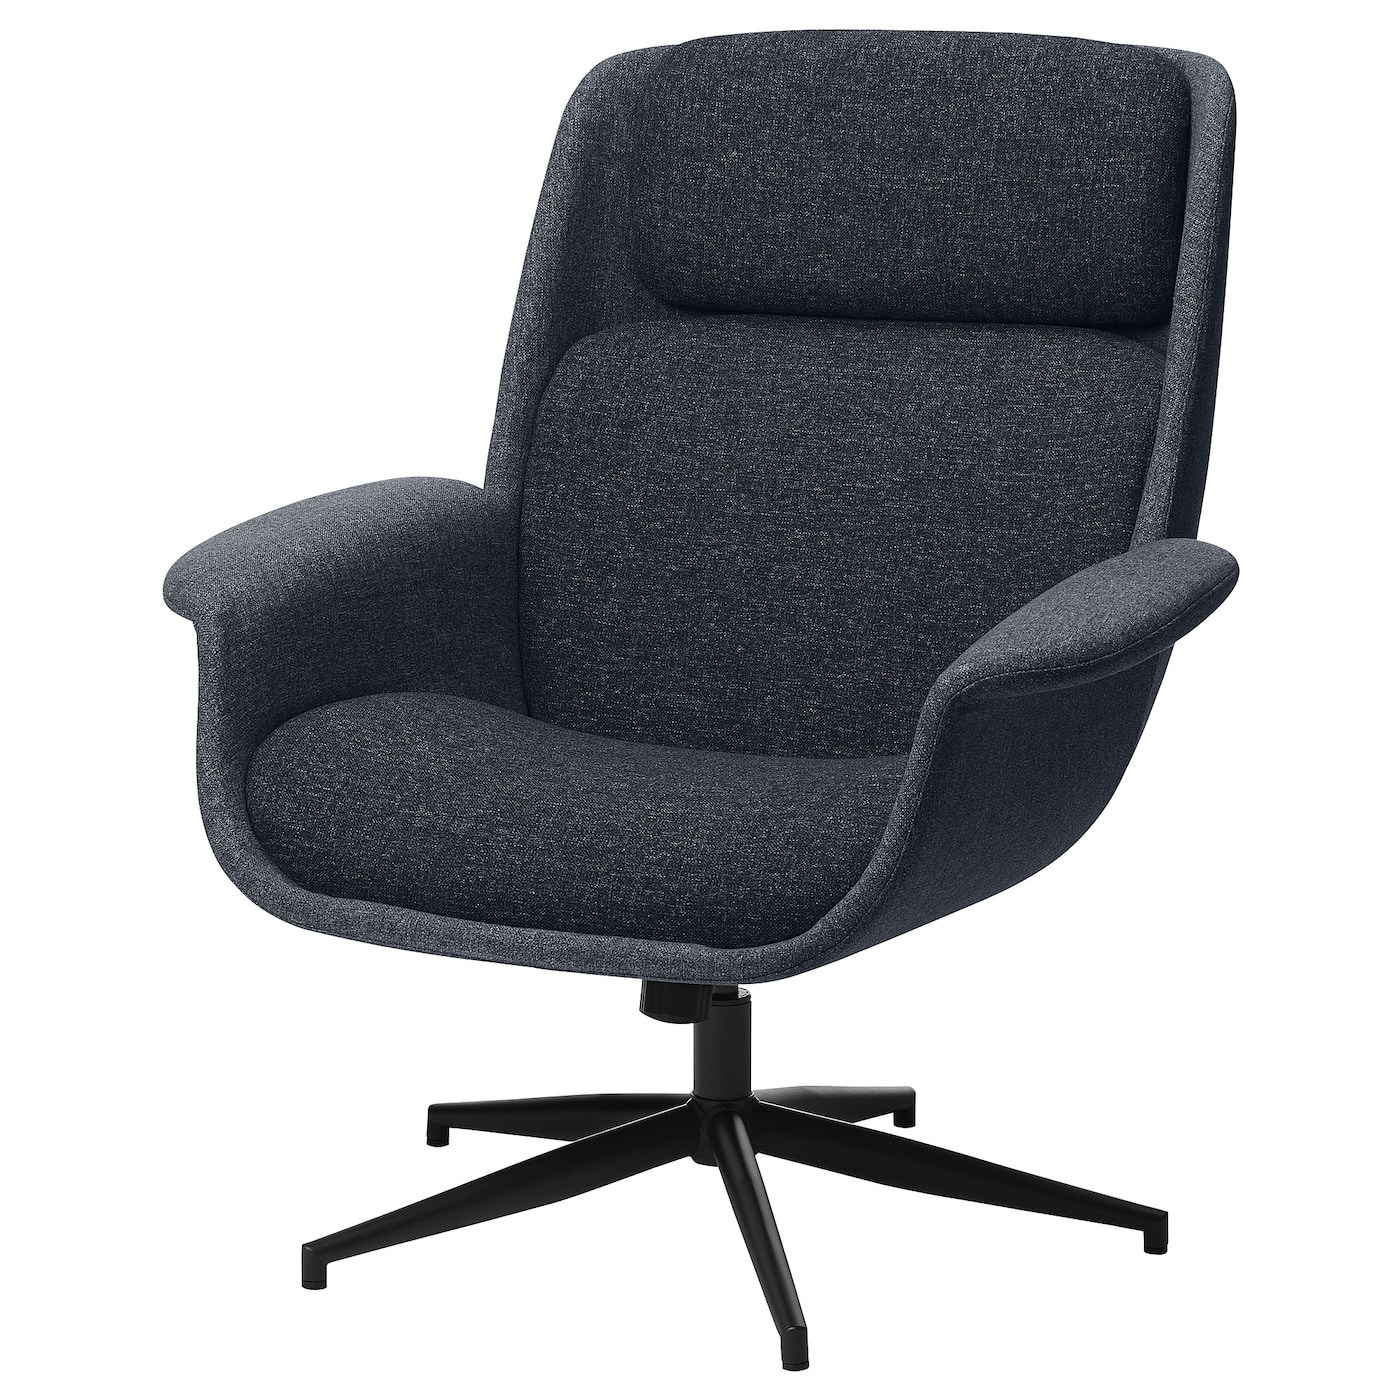 ЭЛЕБИ Вращающееся кресло, Гуннаред средний серый/темно-серый ÄLEBY IKEA эргономичное кресло для дома и офиса удобное вращающееся офисное кресло игровое силе игровая коммерческая мебель jw50gy